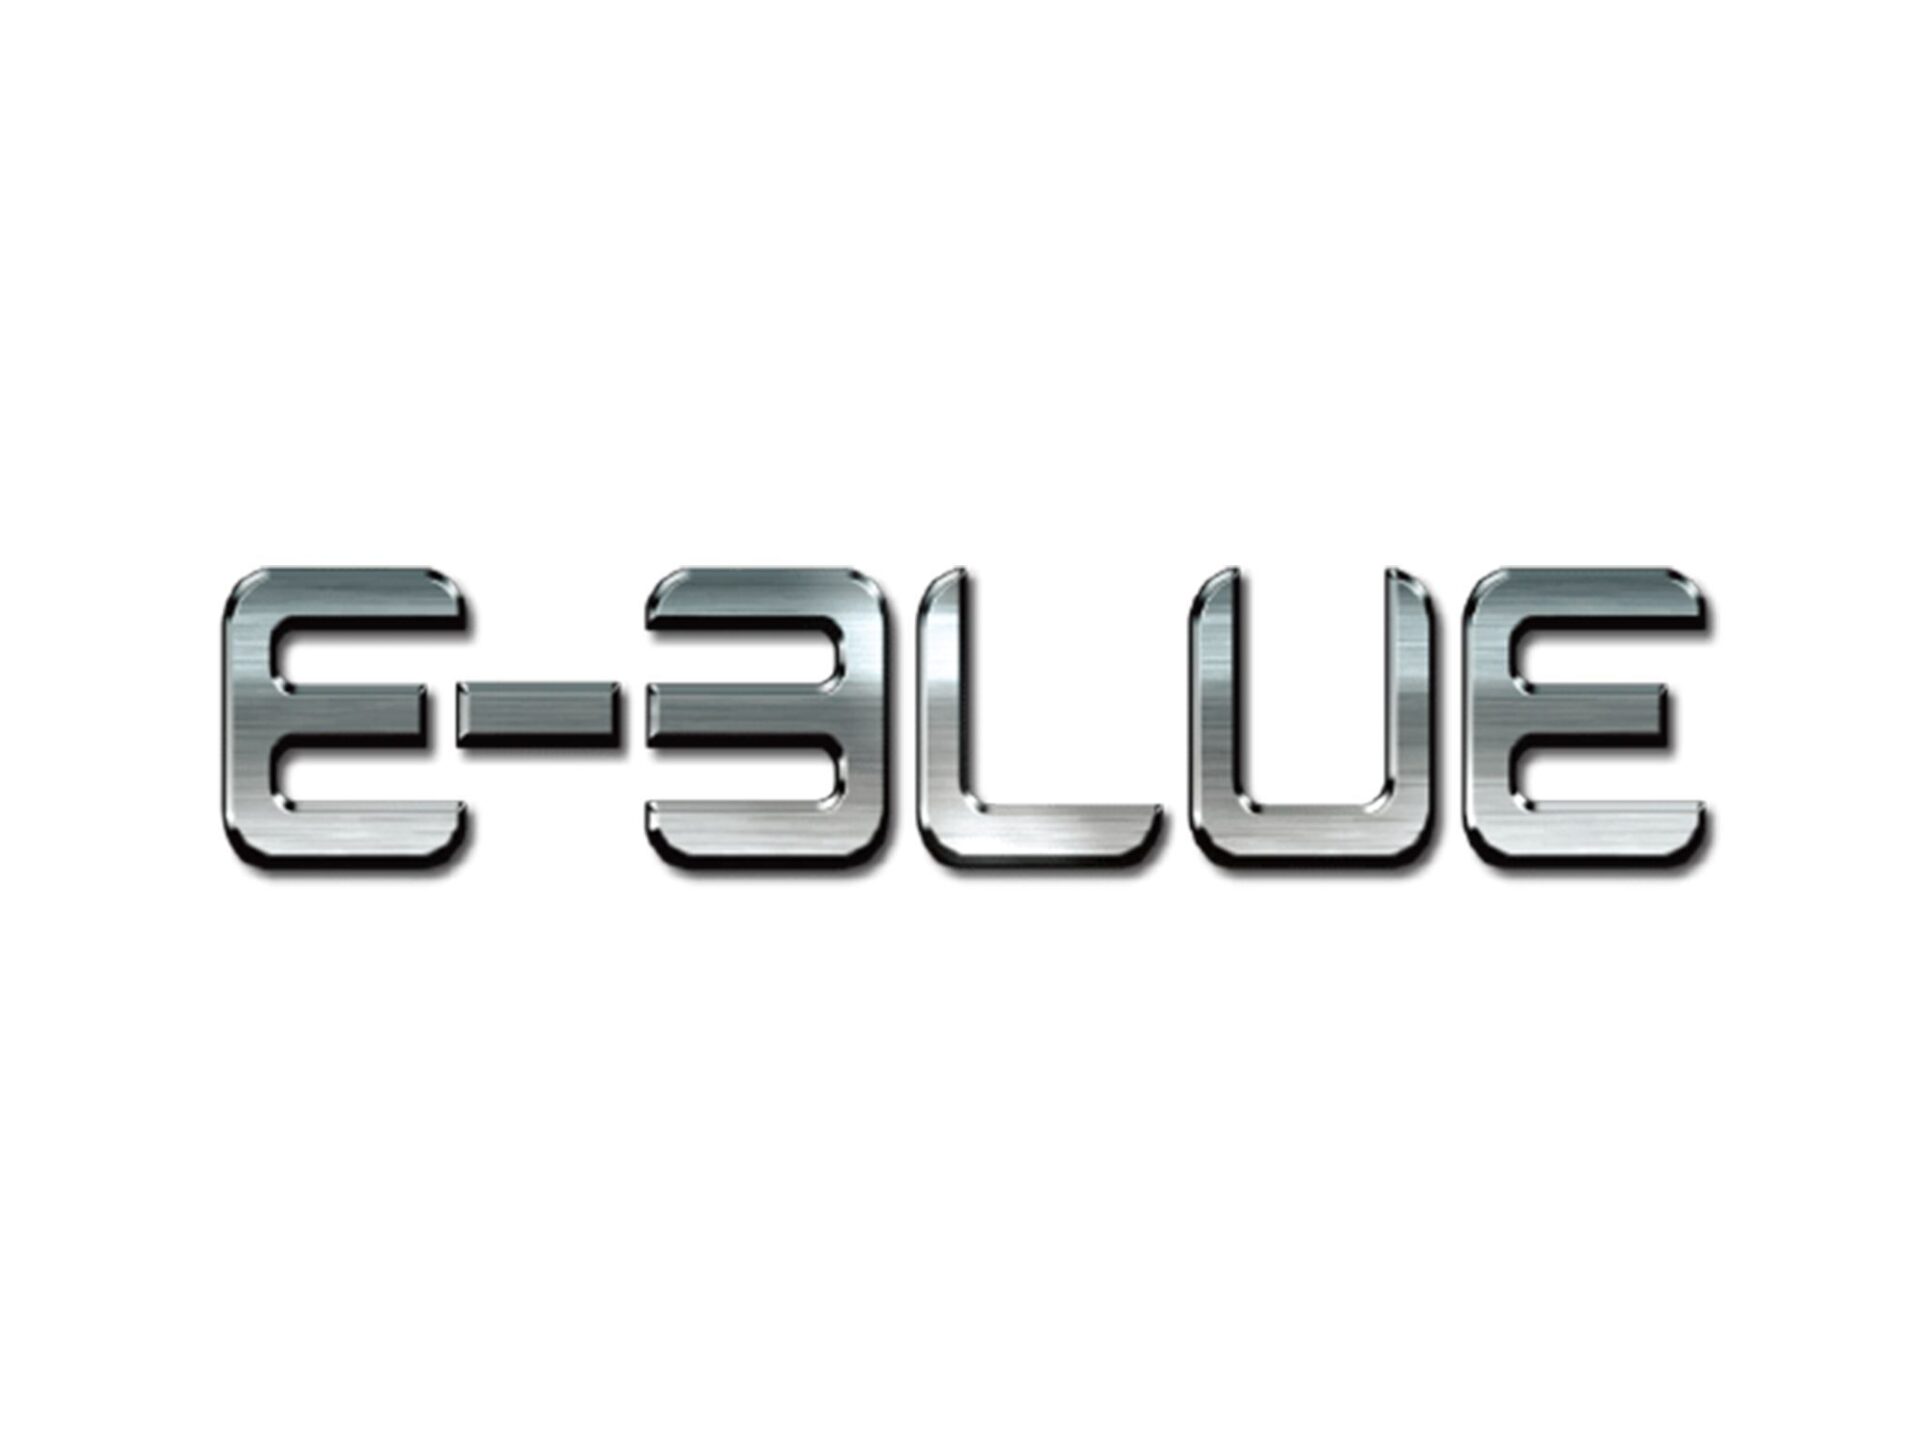 E-BLUE